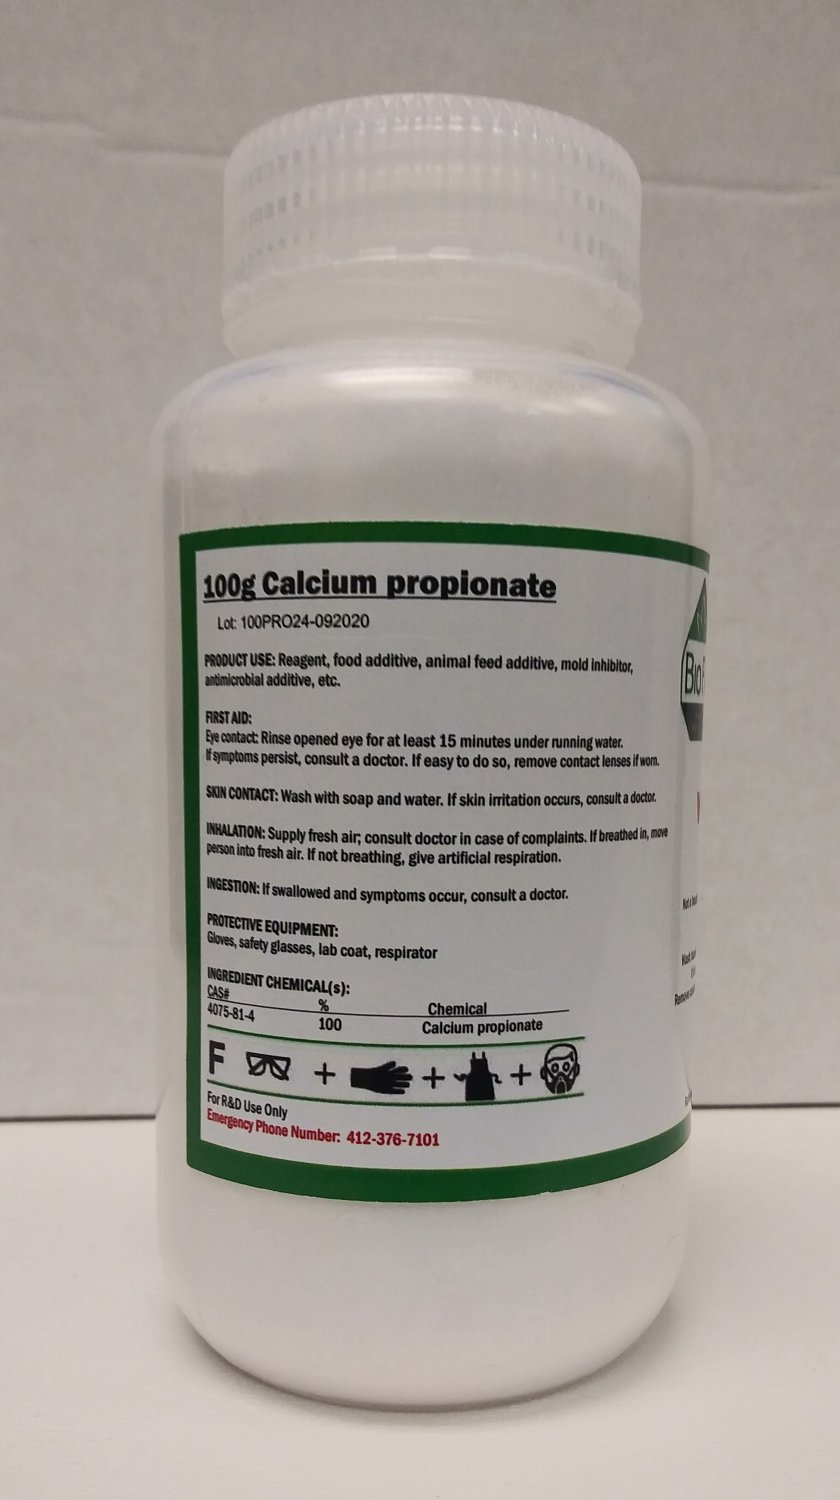 100g Calcium propionate